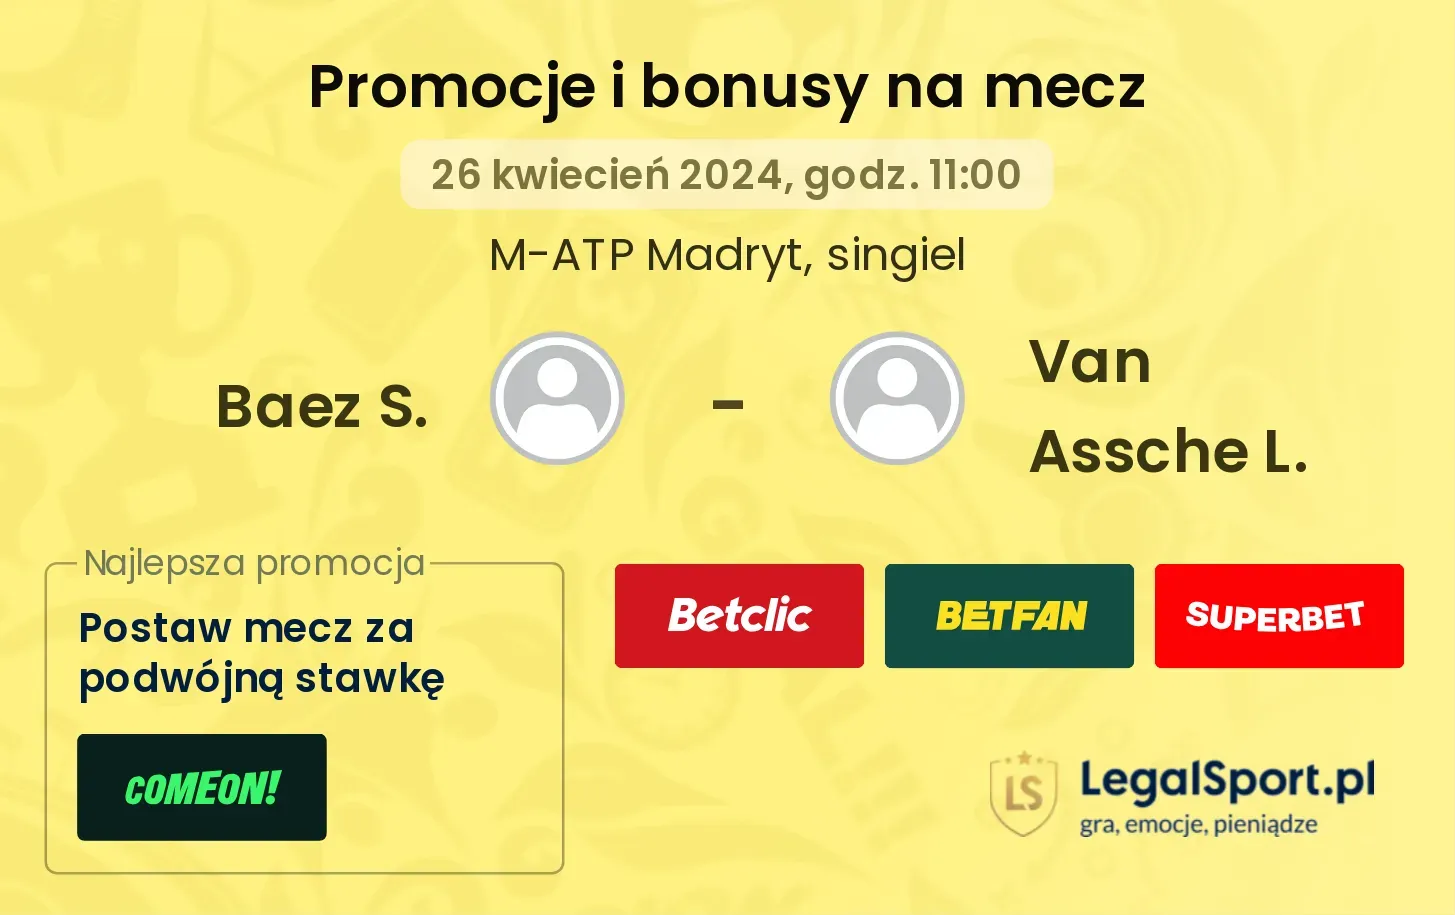 Baez S. - Van Assche L. promocje bonusy na mecz